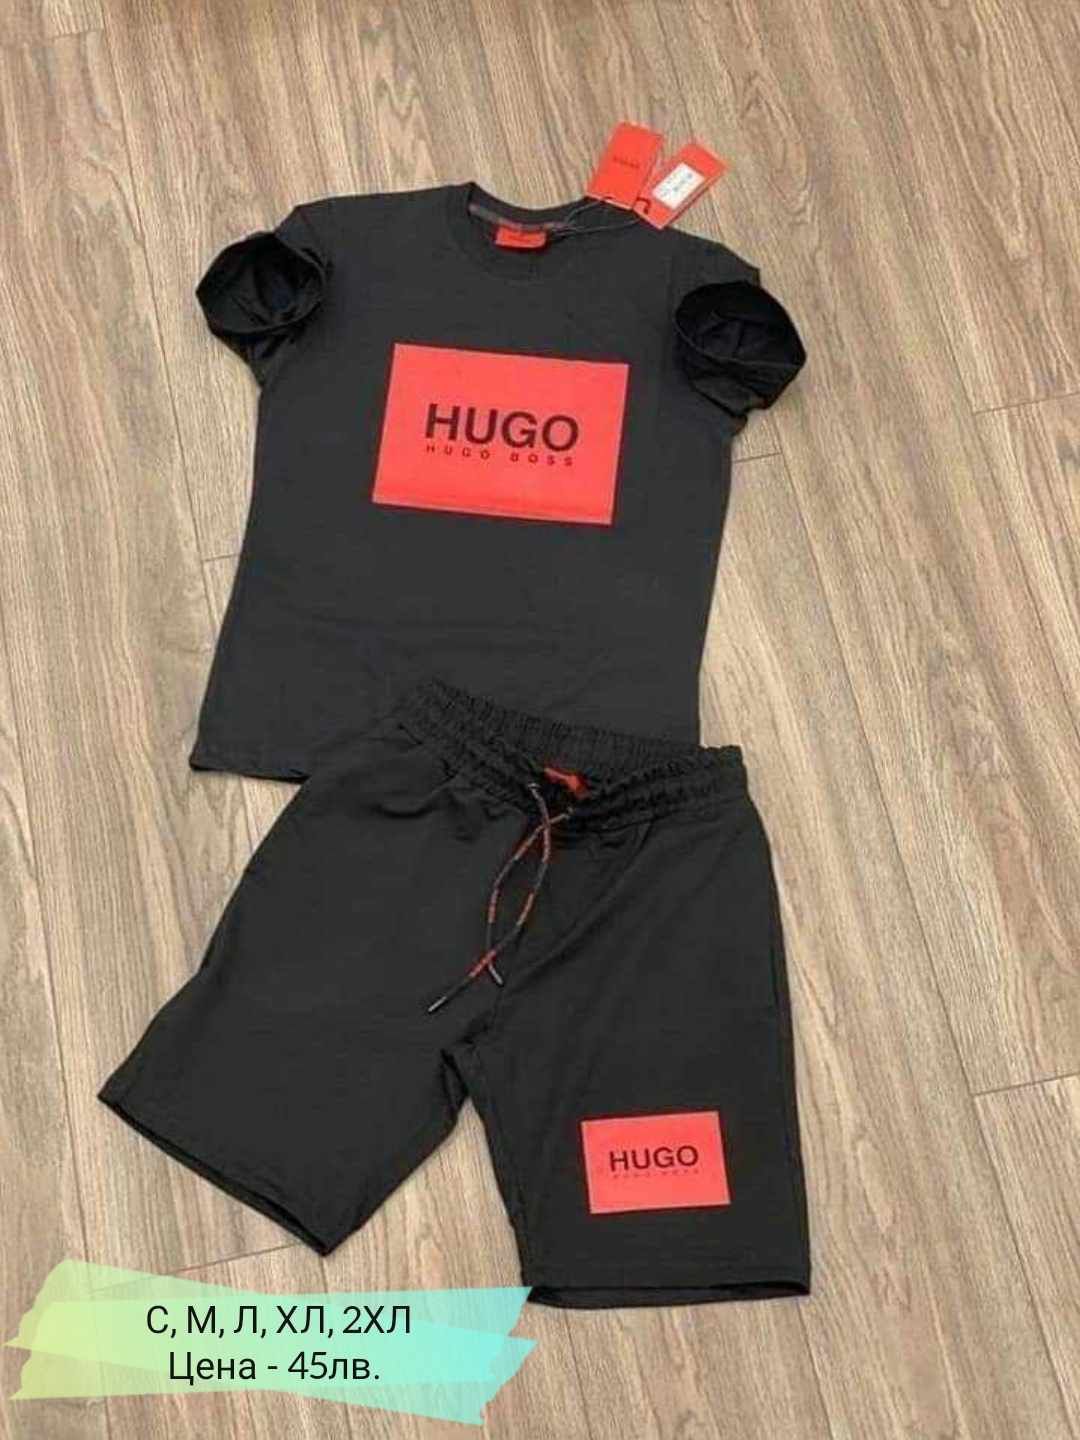 Мъжки спортни екипи и летни комплекти Hugo Boss, Nike, Adidas, Under A